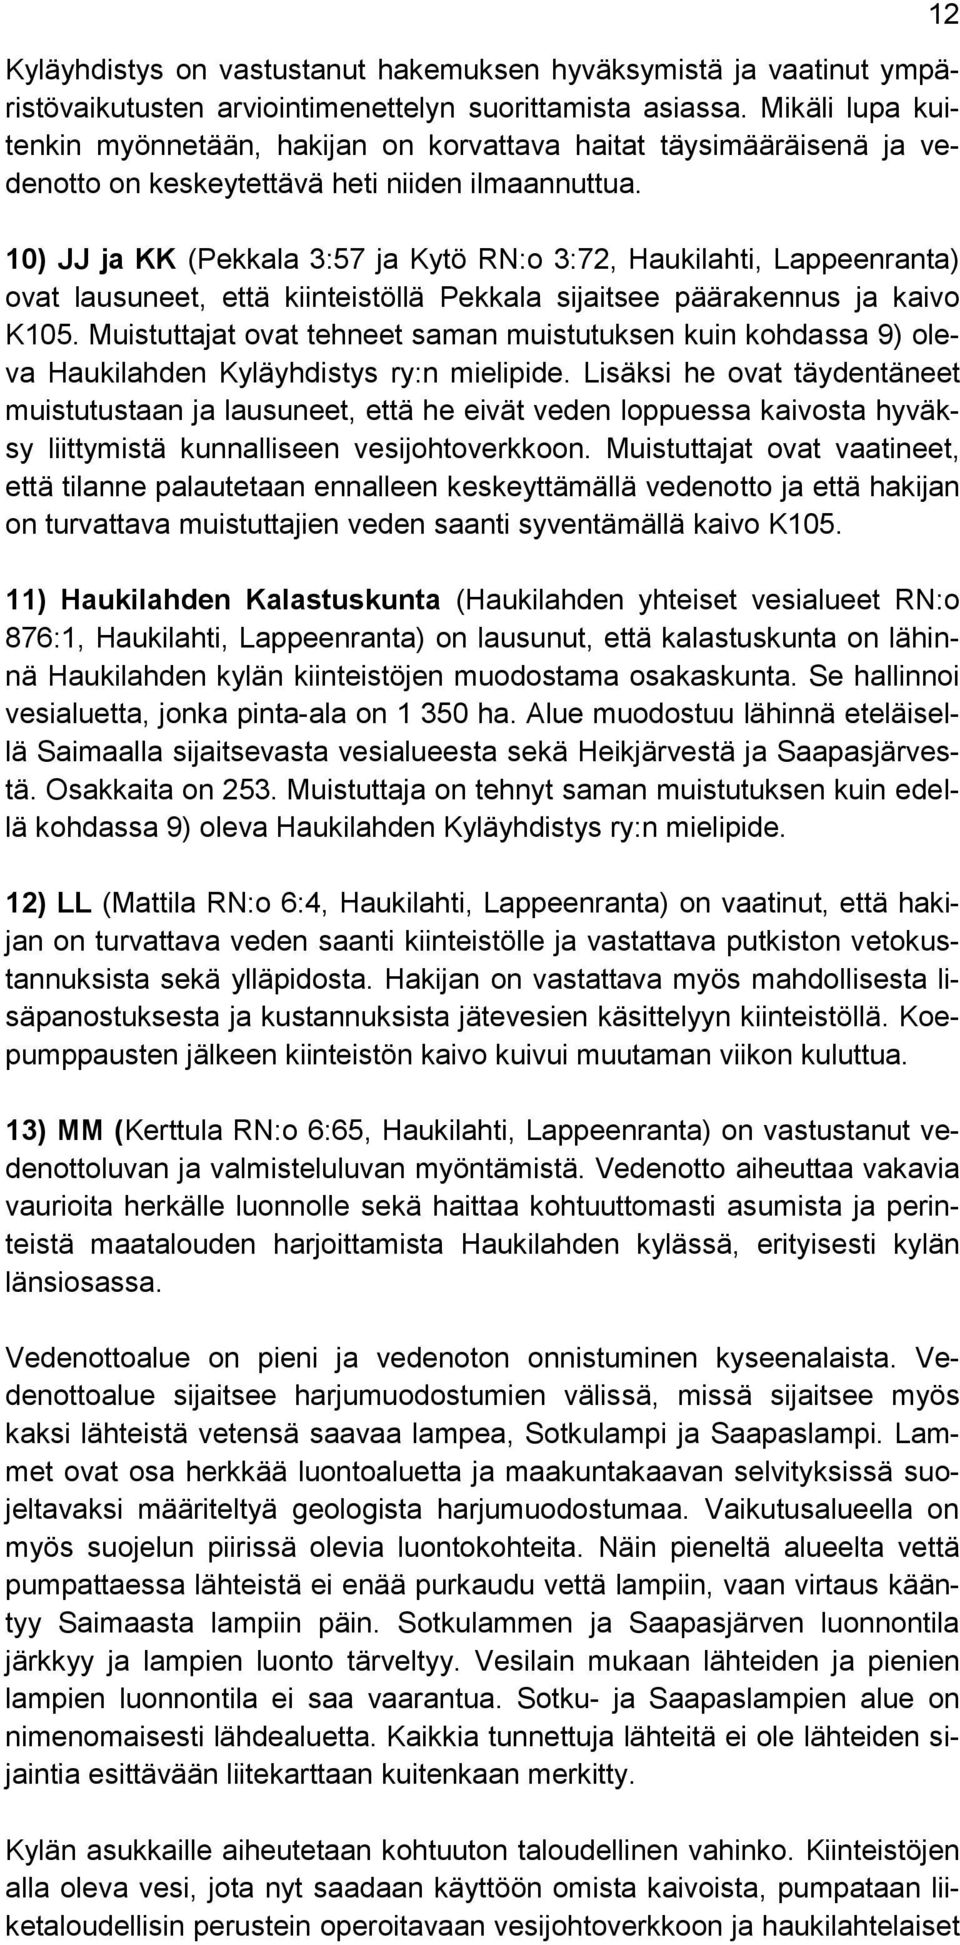 10) JJ ja KK (Pekkala 3:57 ja Kytö RN:o 3:72, Haukilahti, Lappeenranta) ovat lausuneet, että kiinteistöllä Pekkala sijaitsee päärakennus ja kaivo K105.